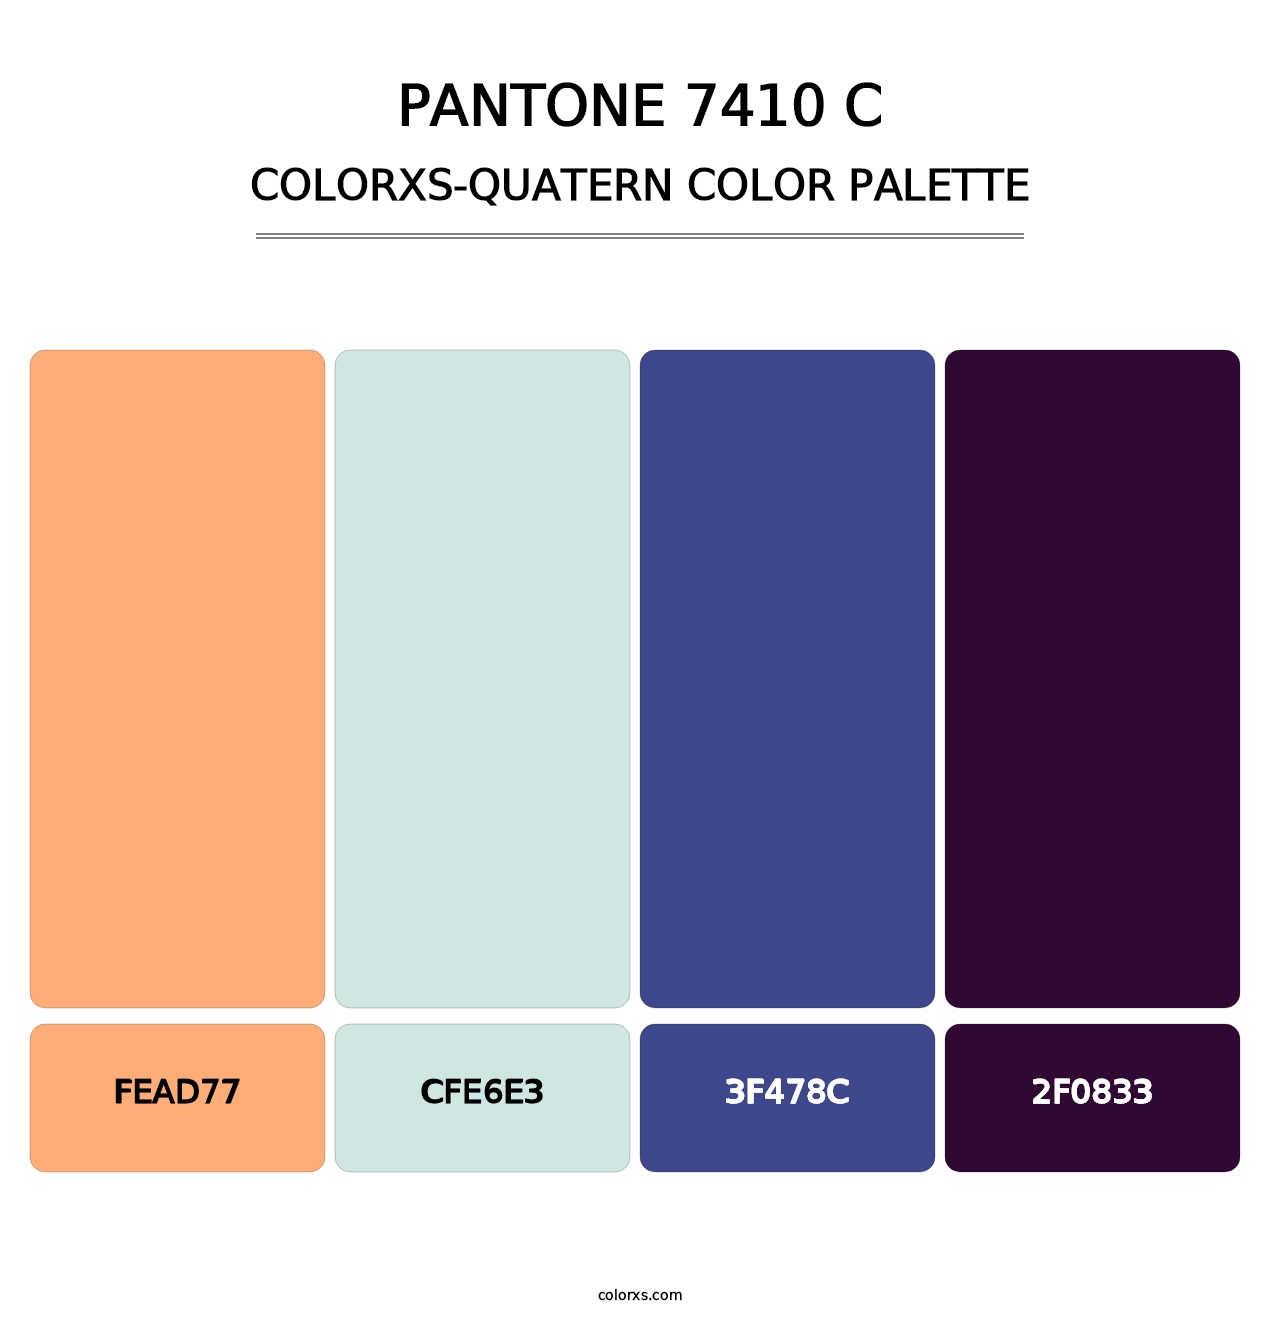 PANTONE 7410 C - Colorxs Quatern Palette